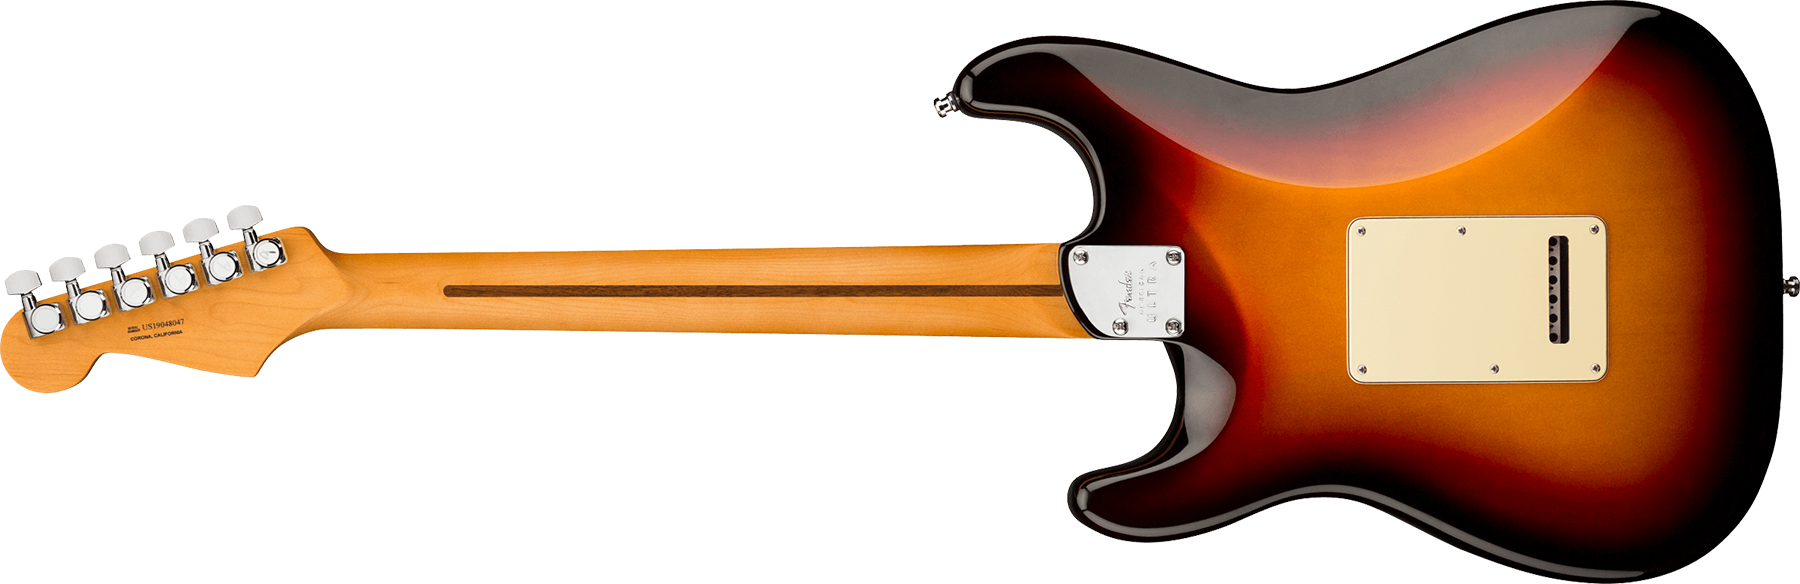 Fender Strat American Ultra 2019 Usa Rw - Ultraburst - E-Gitarre in Str-Form - Variation 1